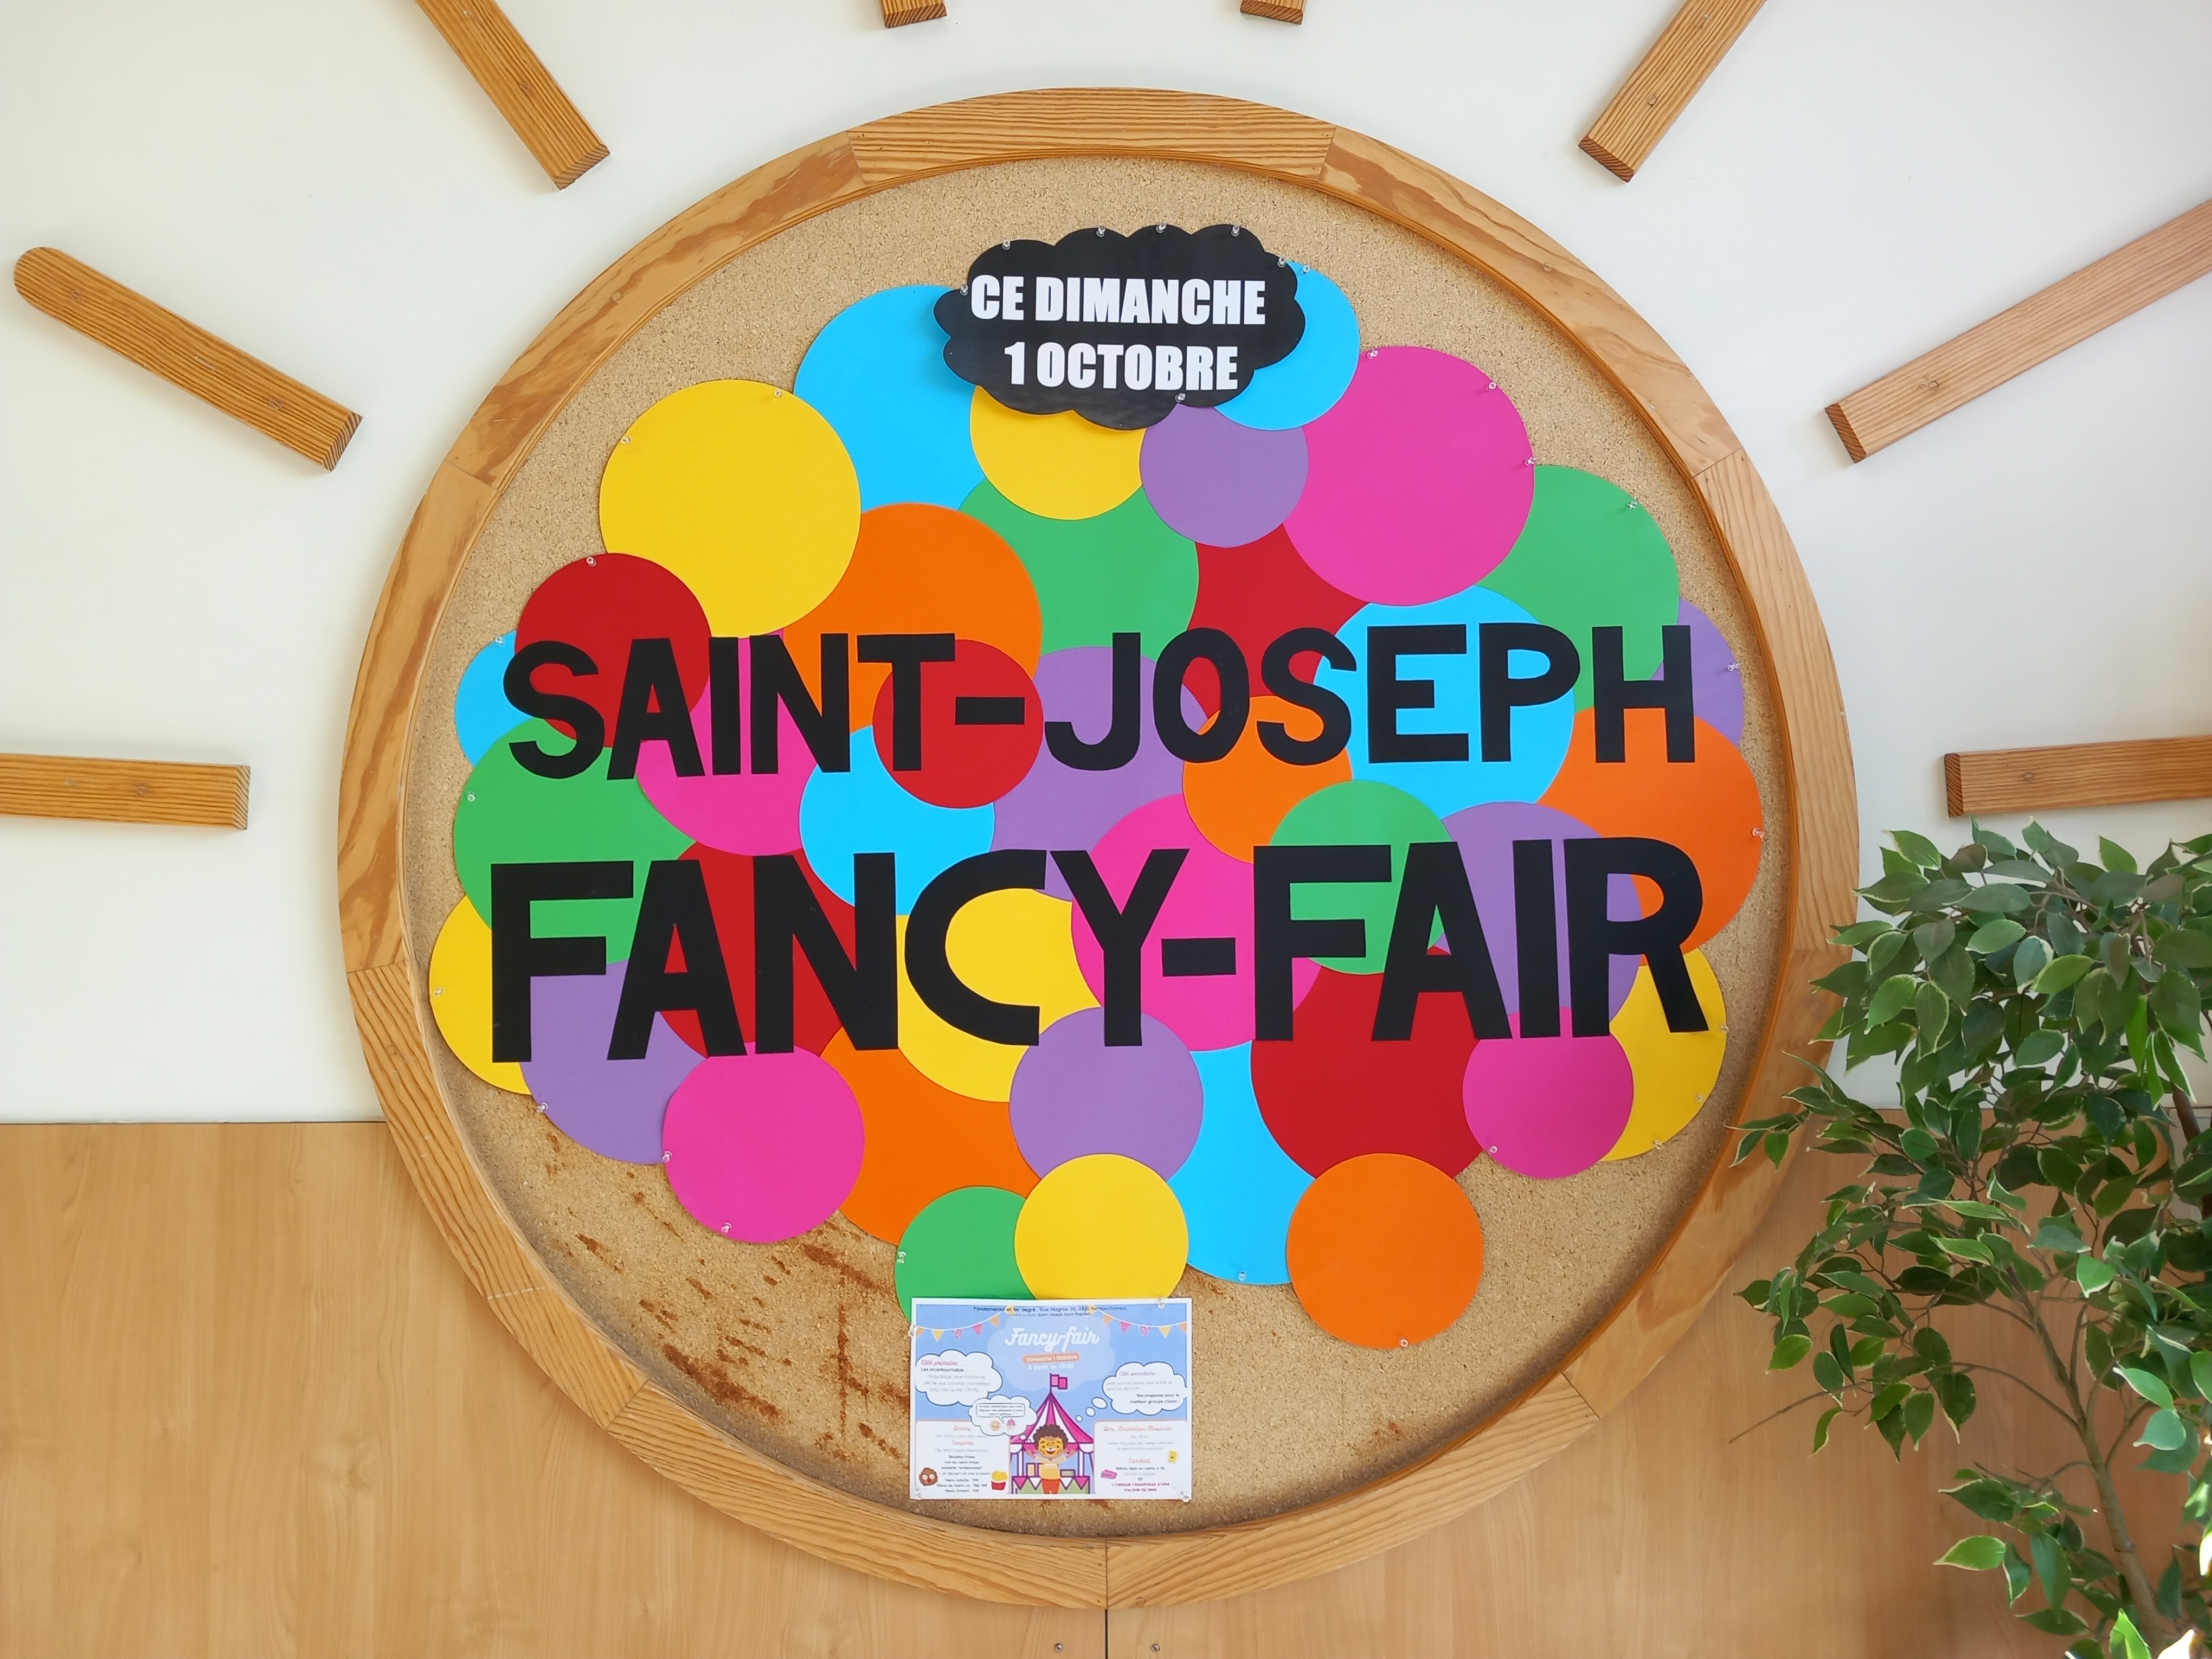 La Fancy fair